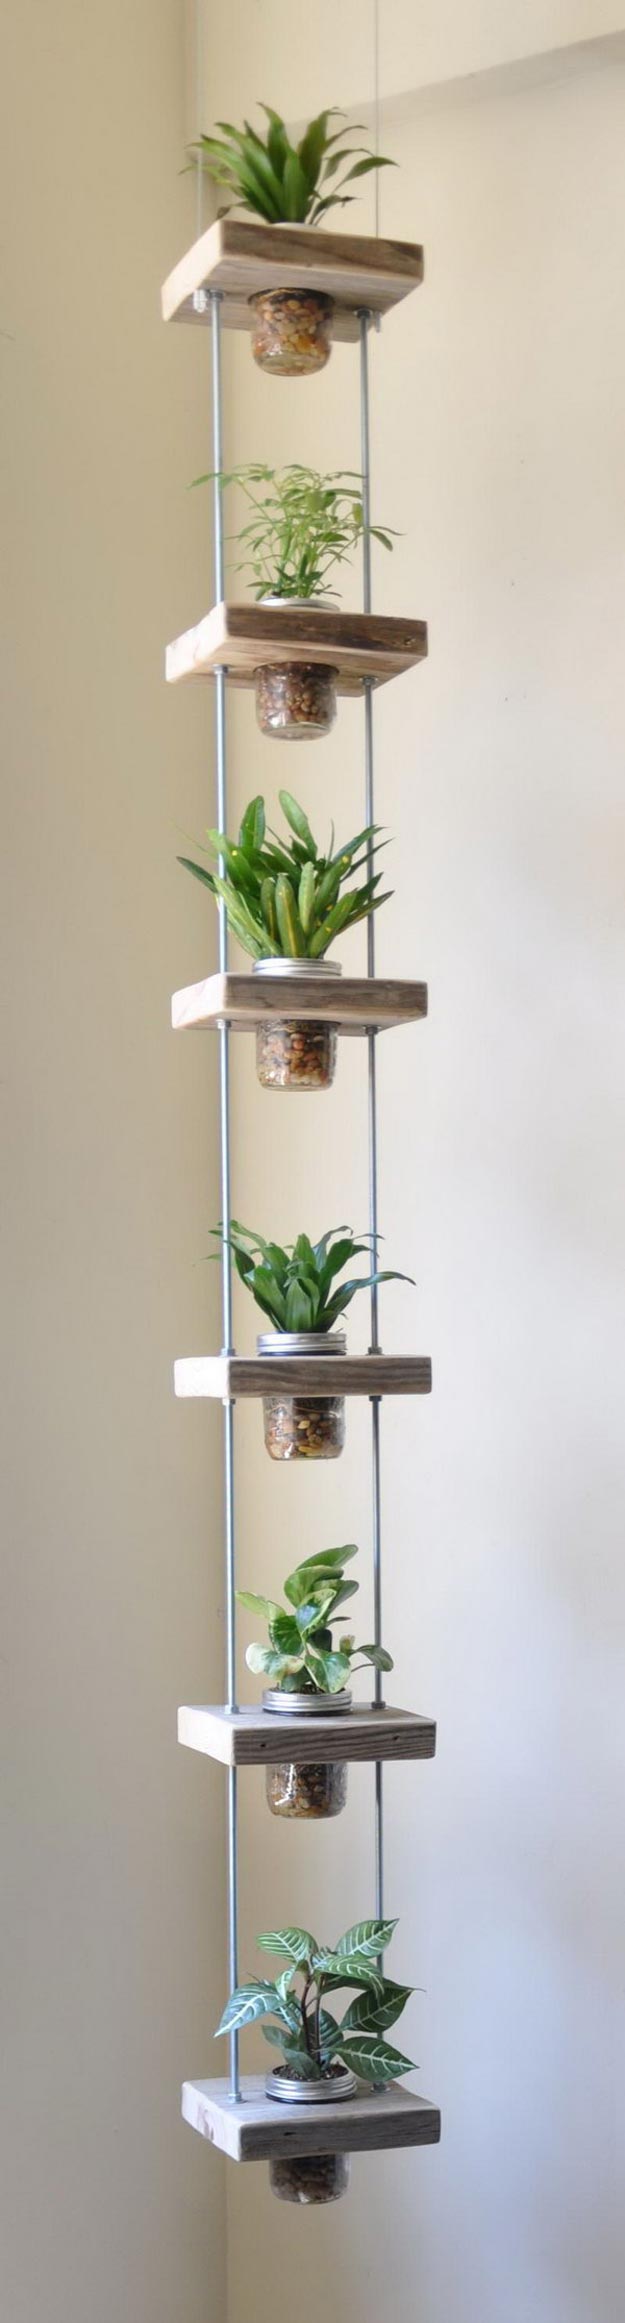 18 Indoor Herb Garden Ideas---Mason Jar Vertical Herb Garden